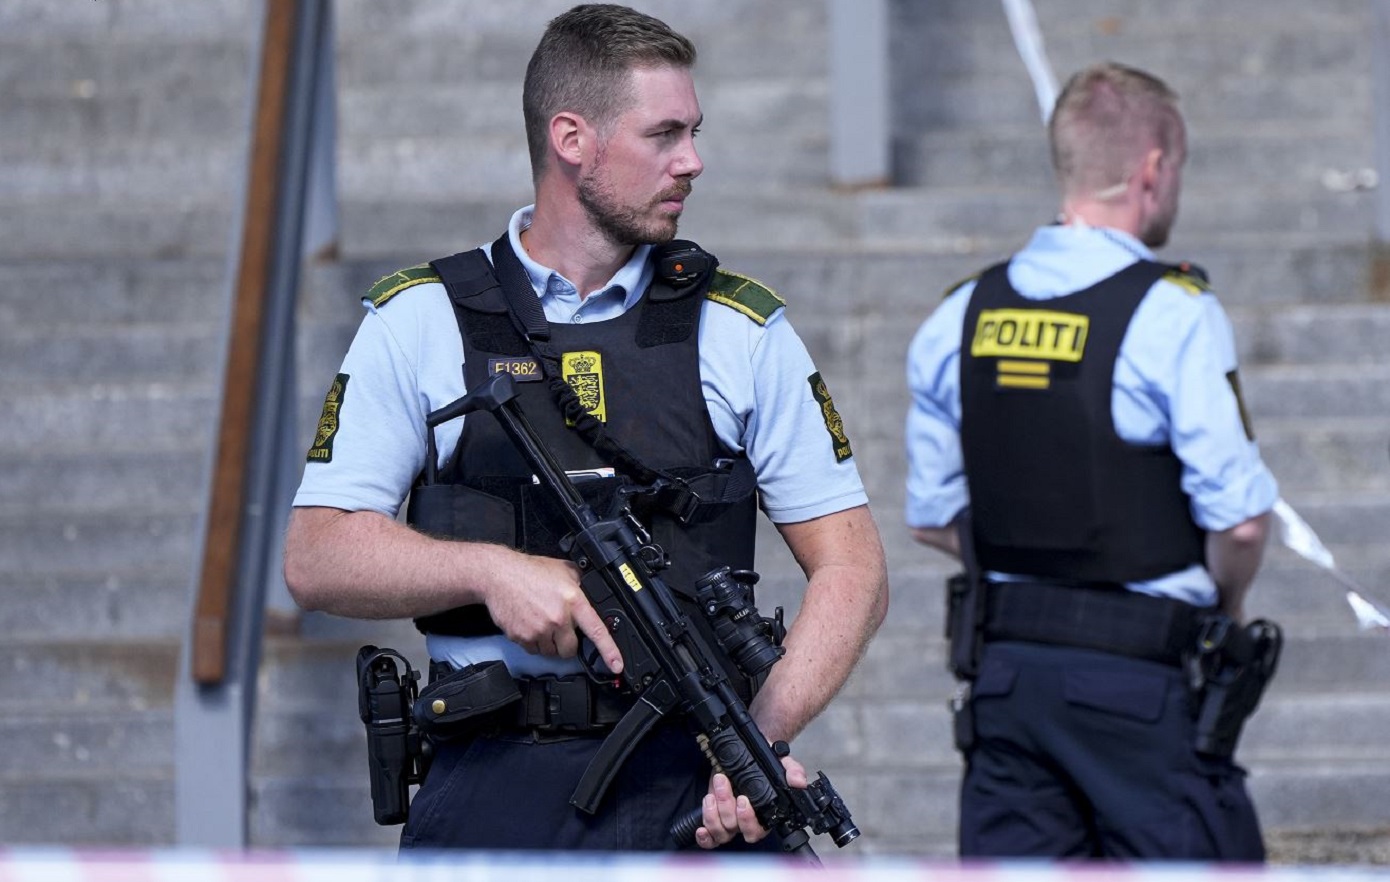 Σχεδόν ένας τόνος εκρηκτικών ανακαλύφθηκε στη Δανία μετά τον θάνατο άνδρα από έκρηξη